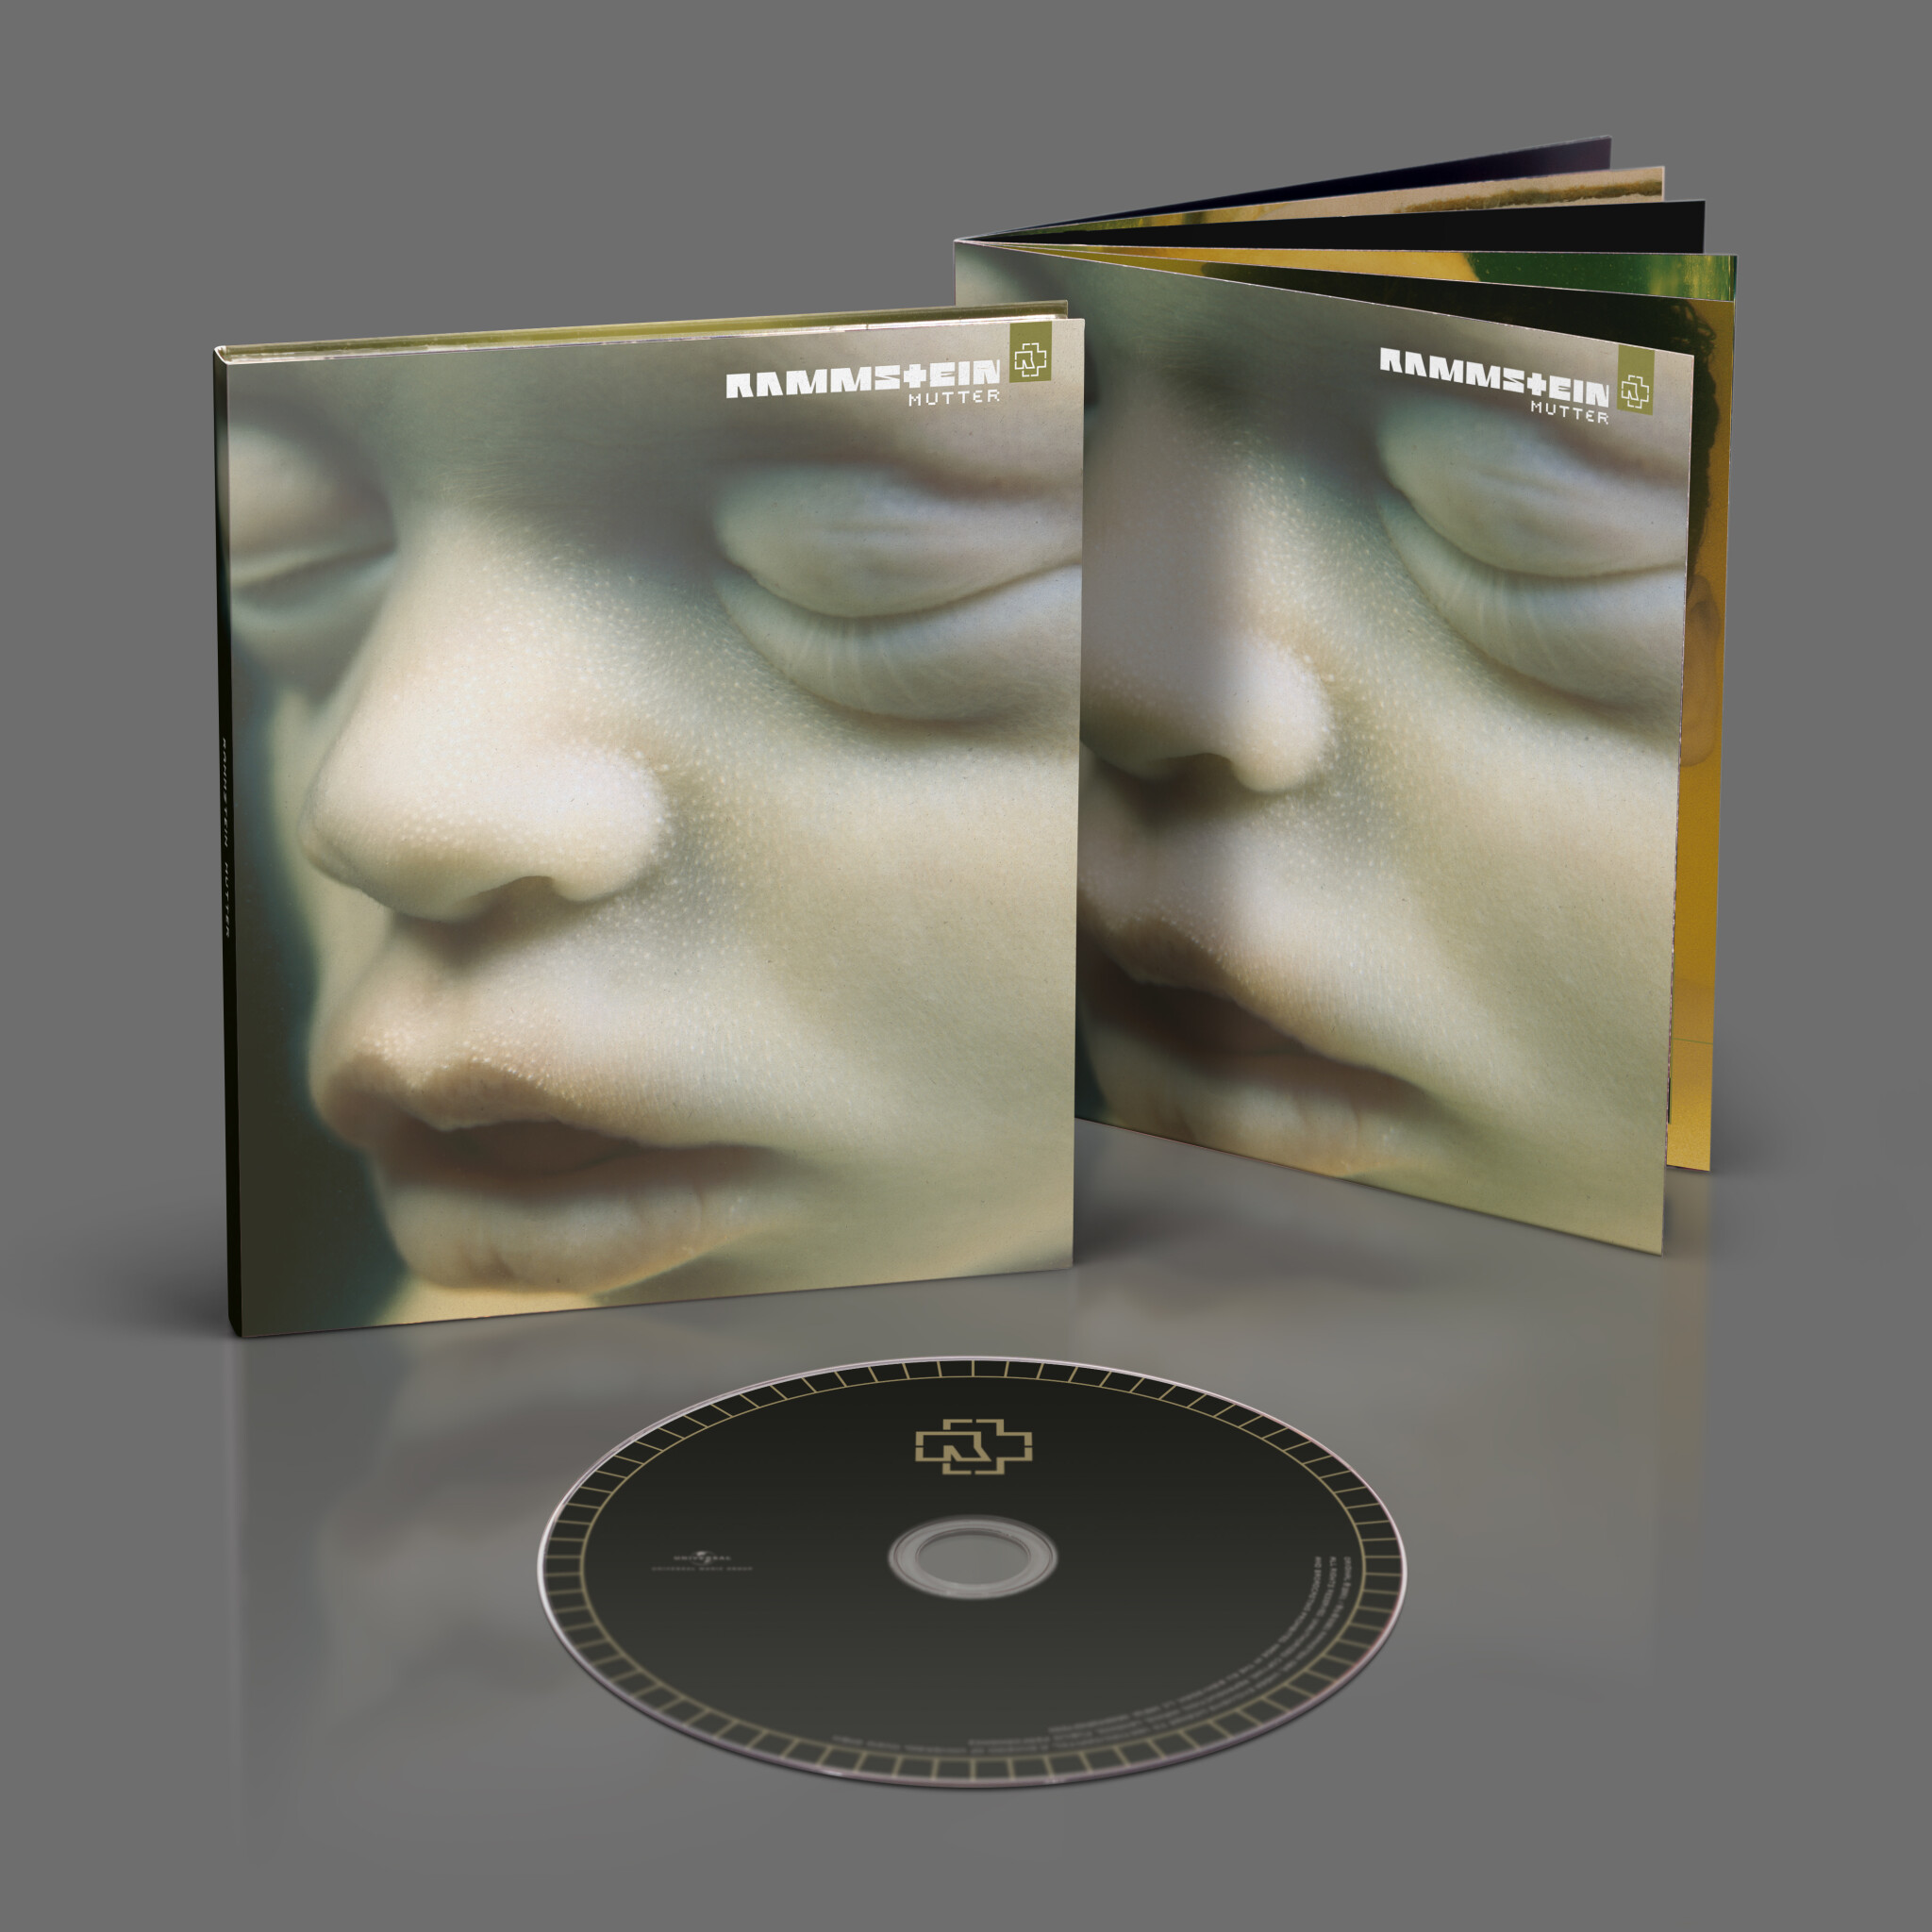 Álbum de Rammstein ”Mutter”, CD